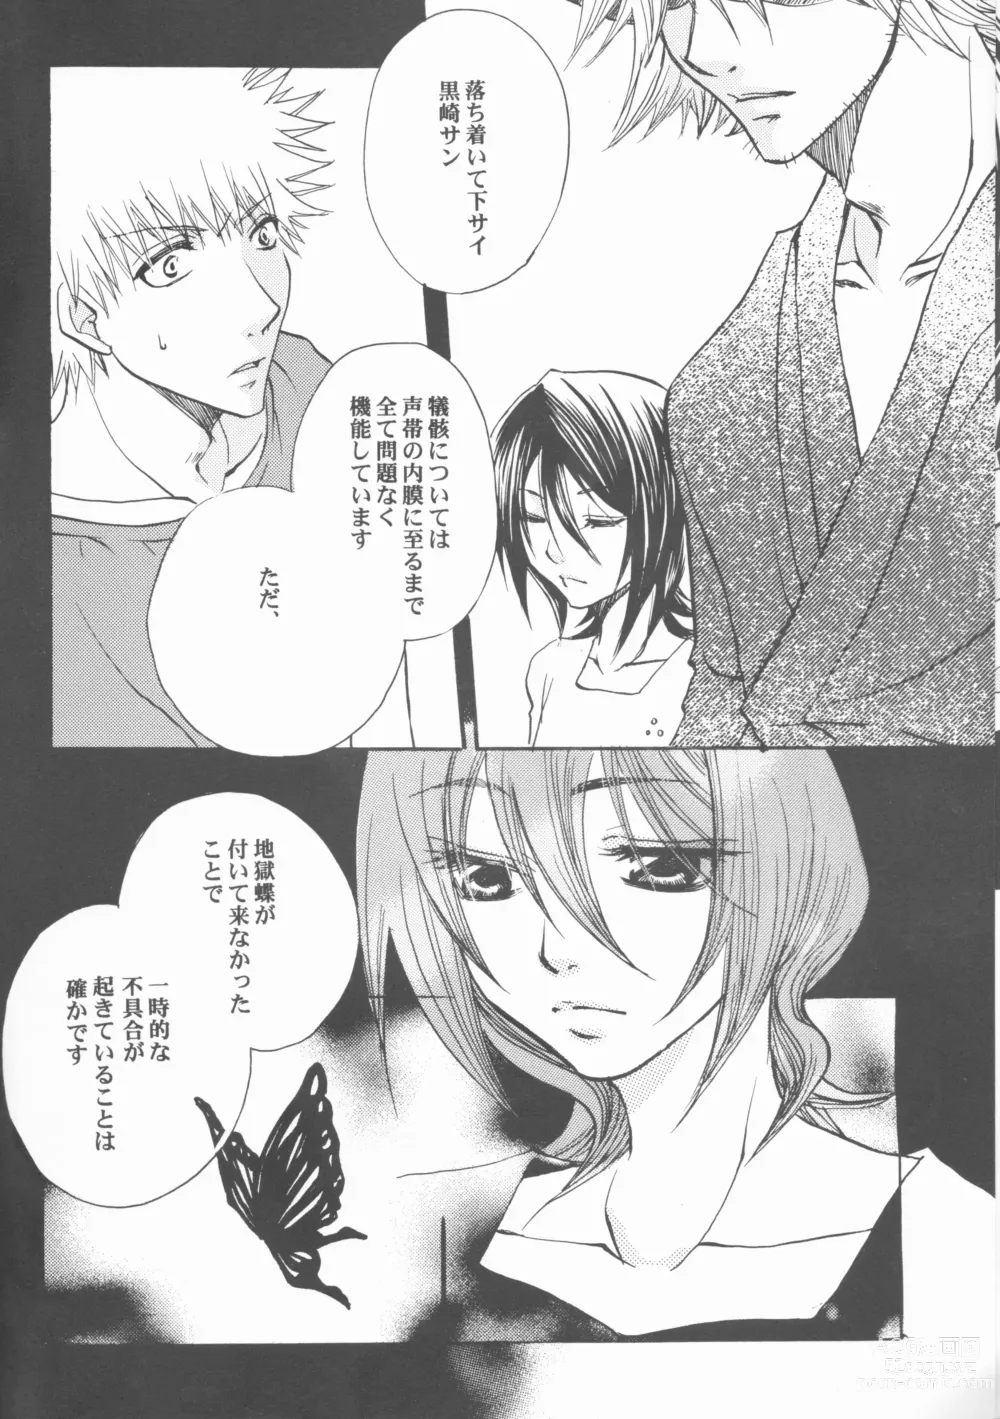 Page 6 of doujinshi Kimi o suki ni natte hajimete no natsu ga kuru.